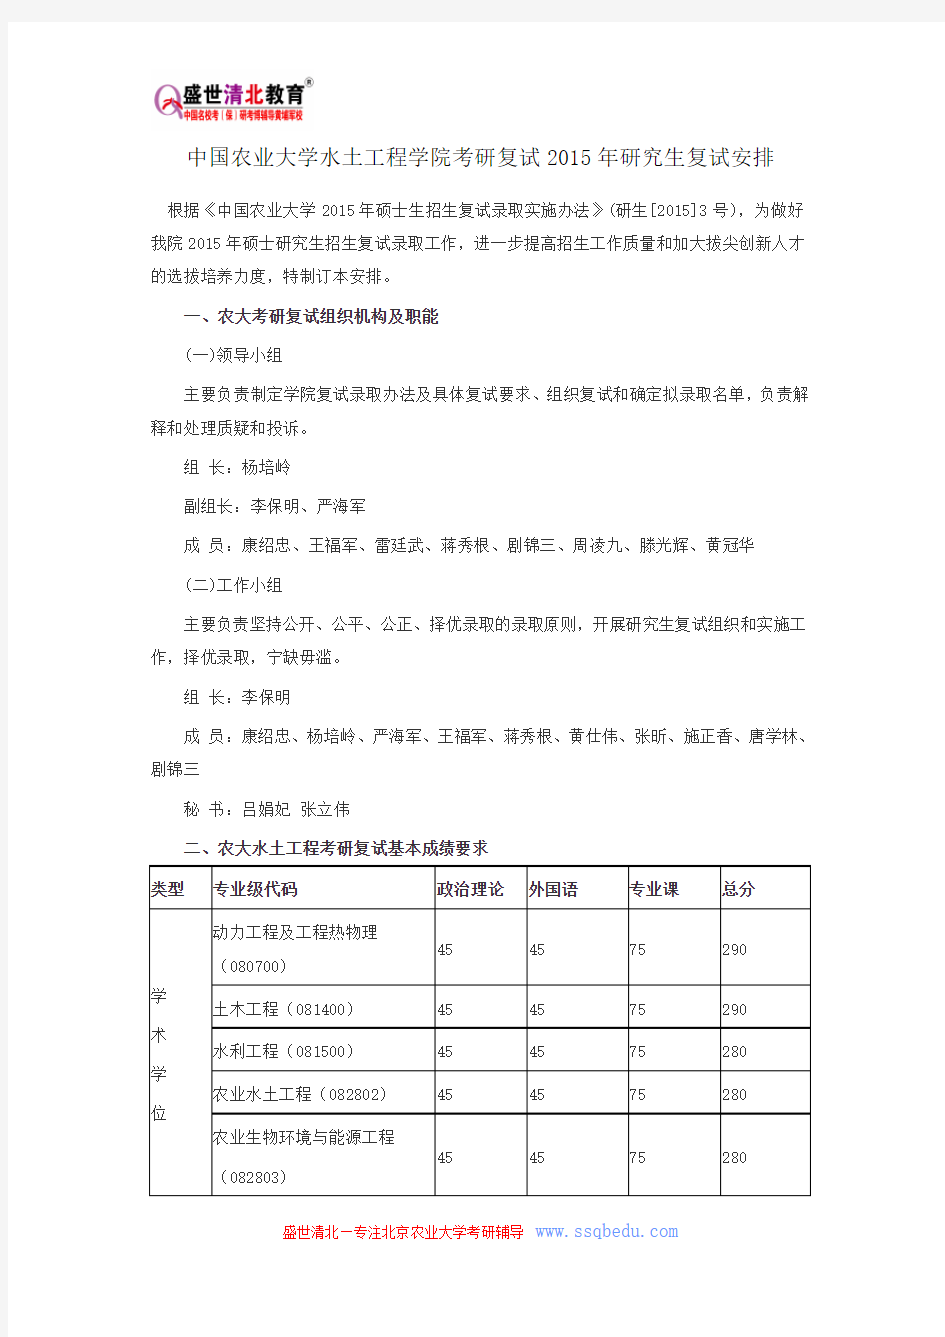 中国农业大学水土工程学院考研复试2015年研究生复试安排